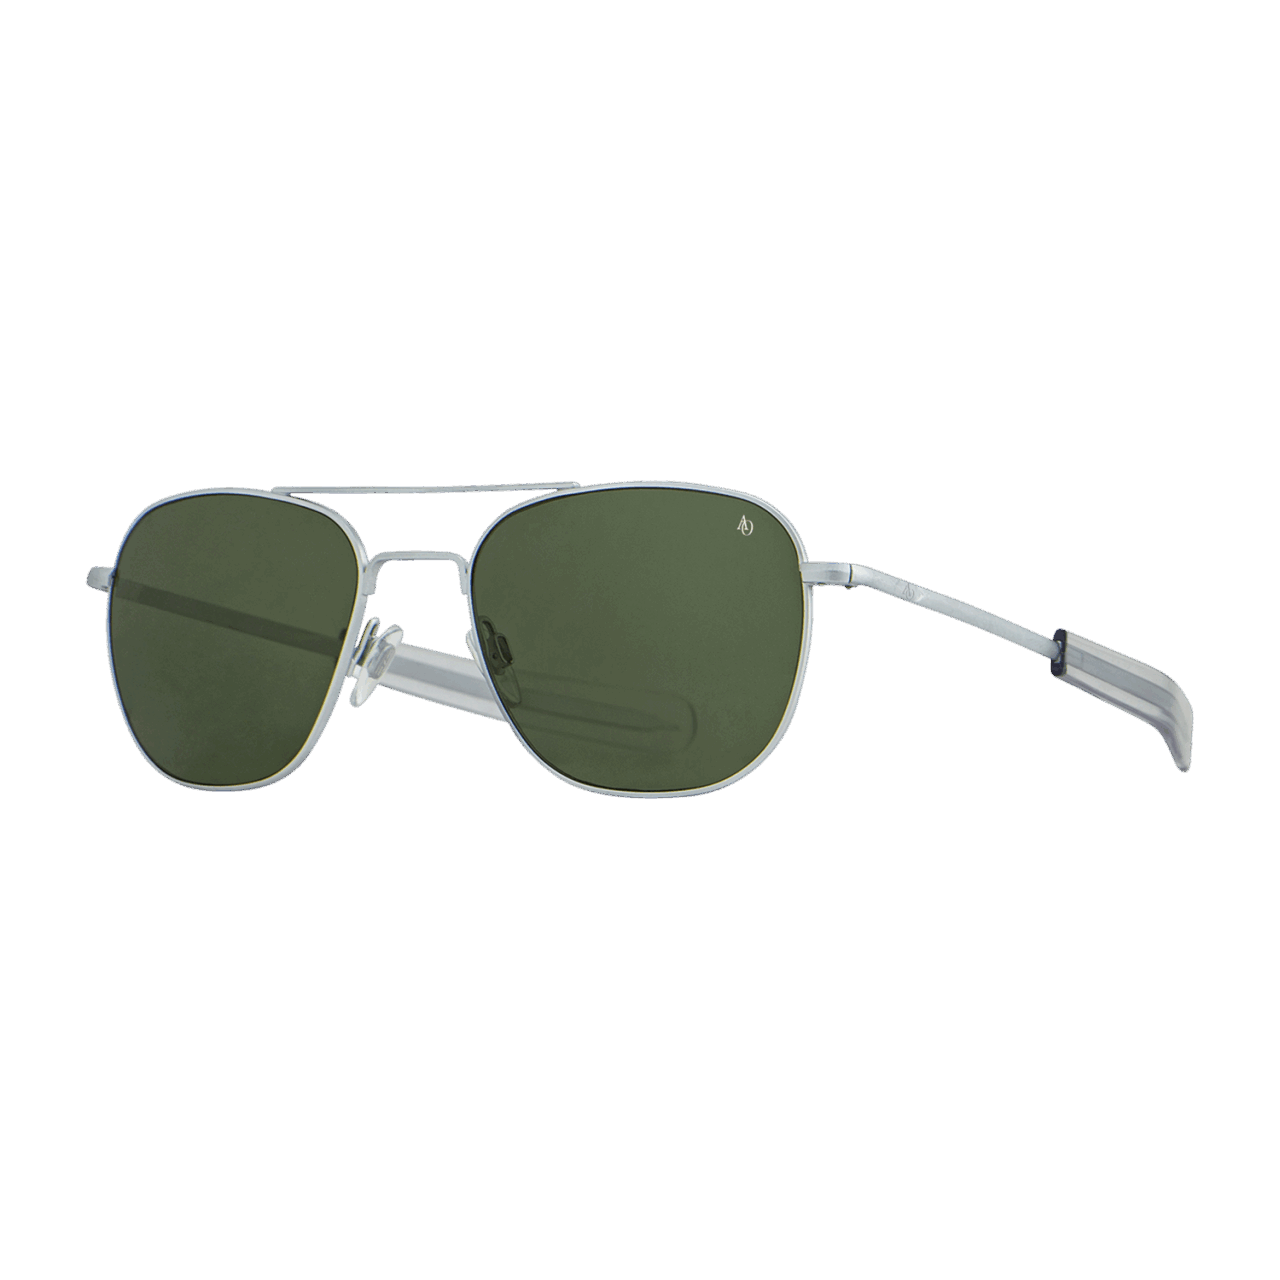 American Optical Pilotenbrille - Silber Matt / True Color grün